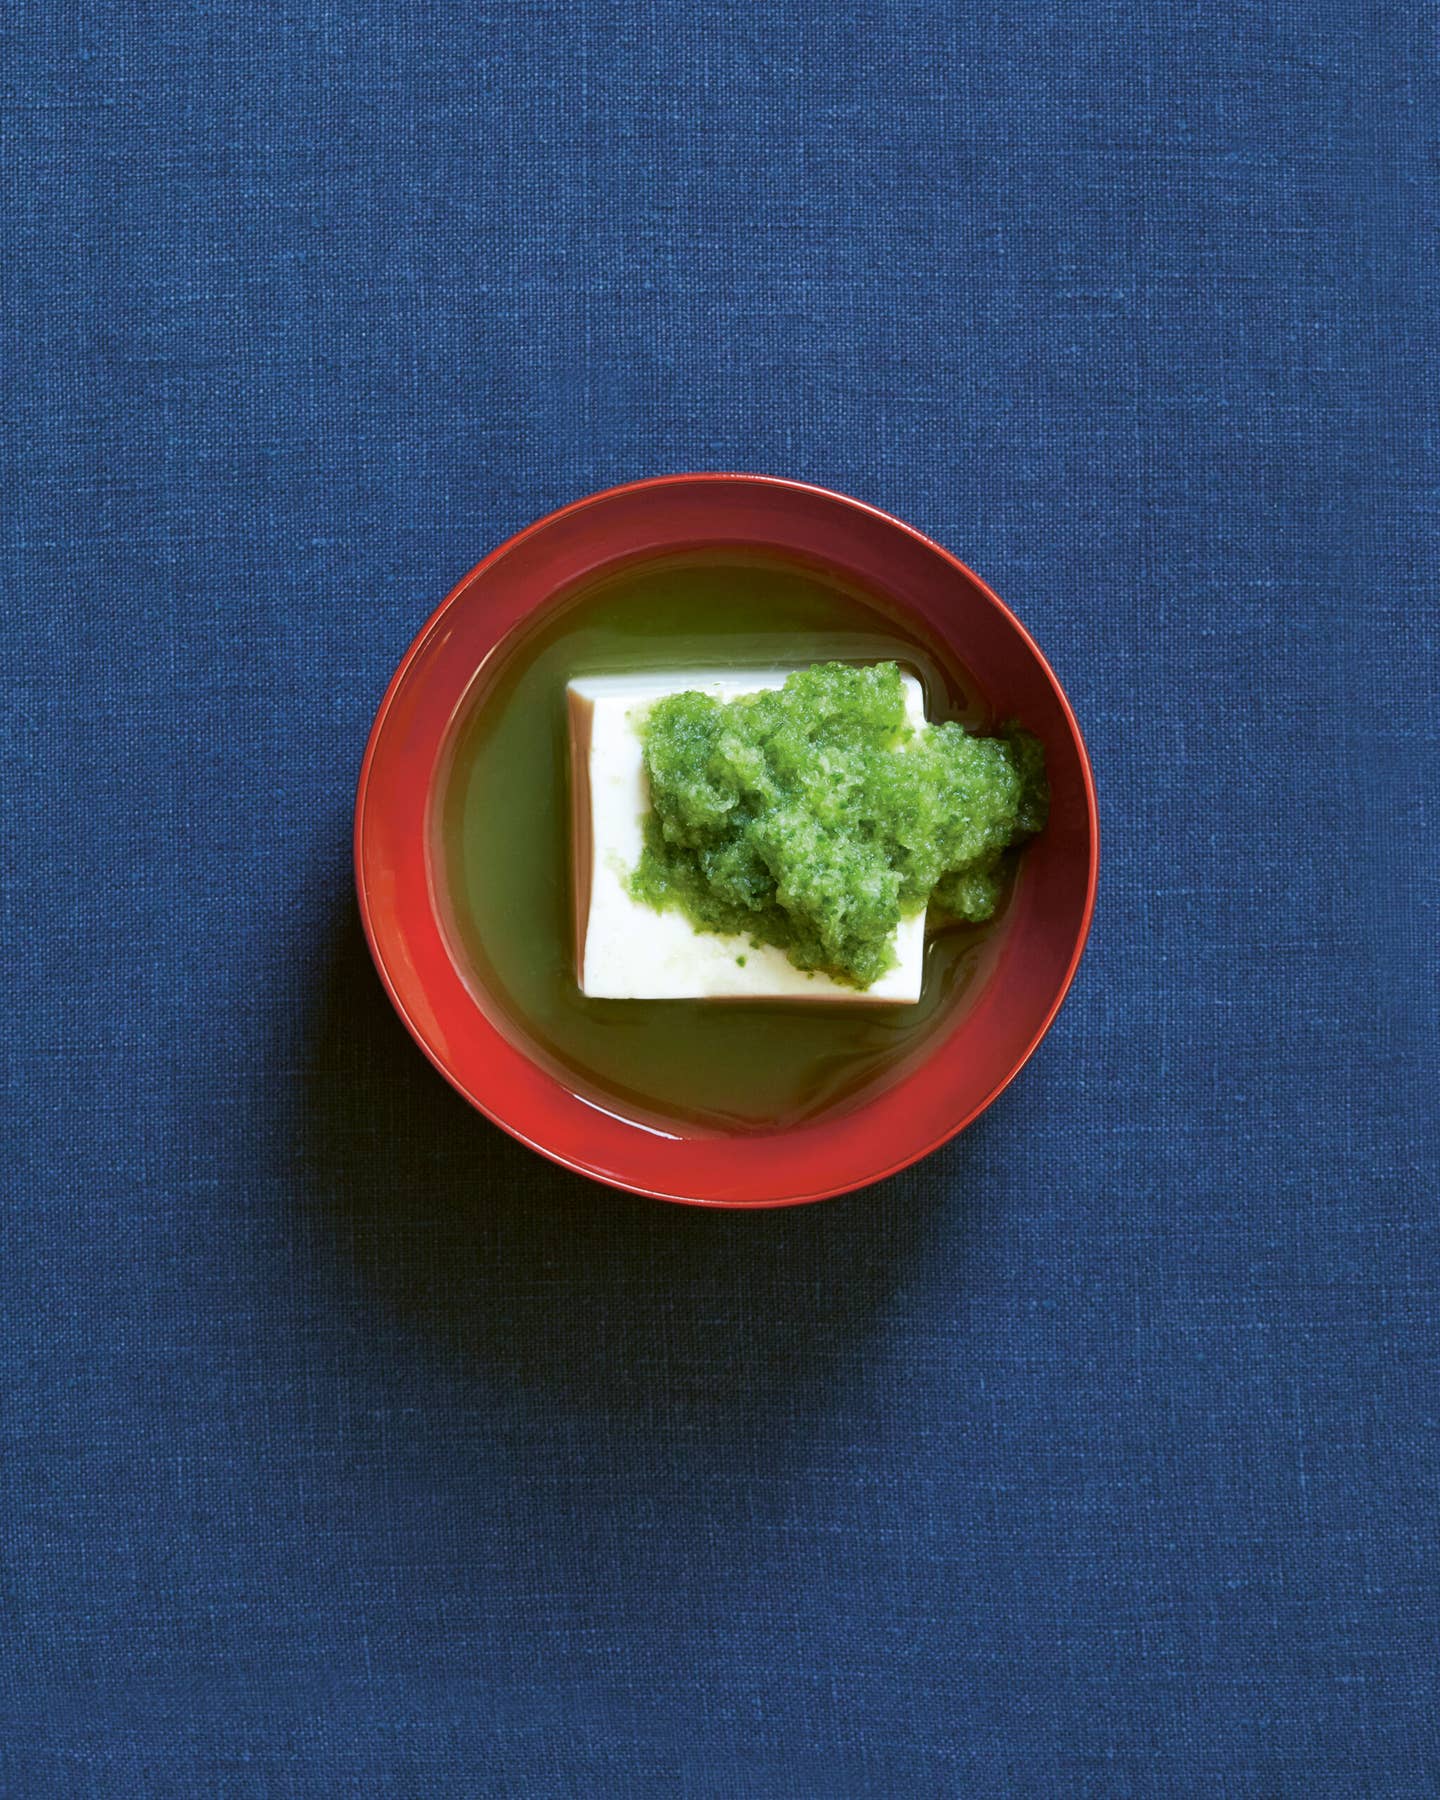 Cold Tofu Recipe with Cucumber Vinegar